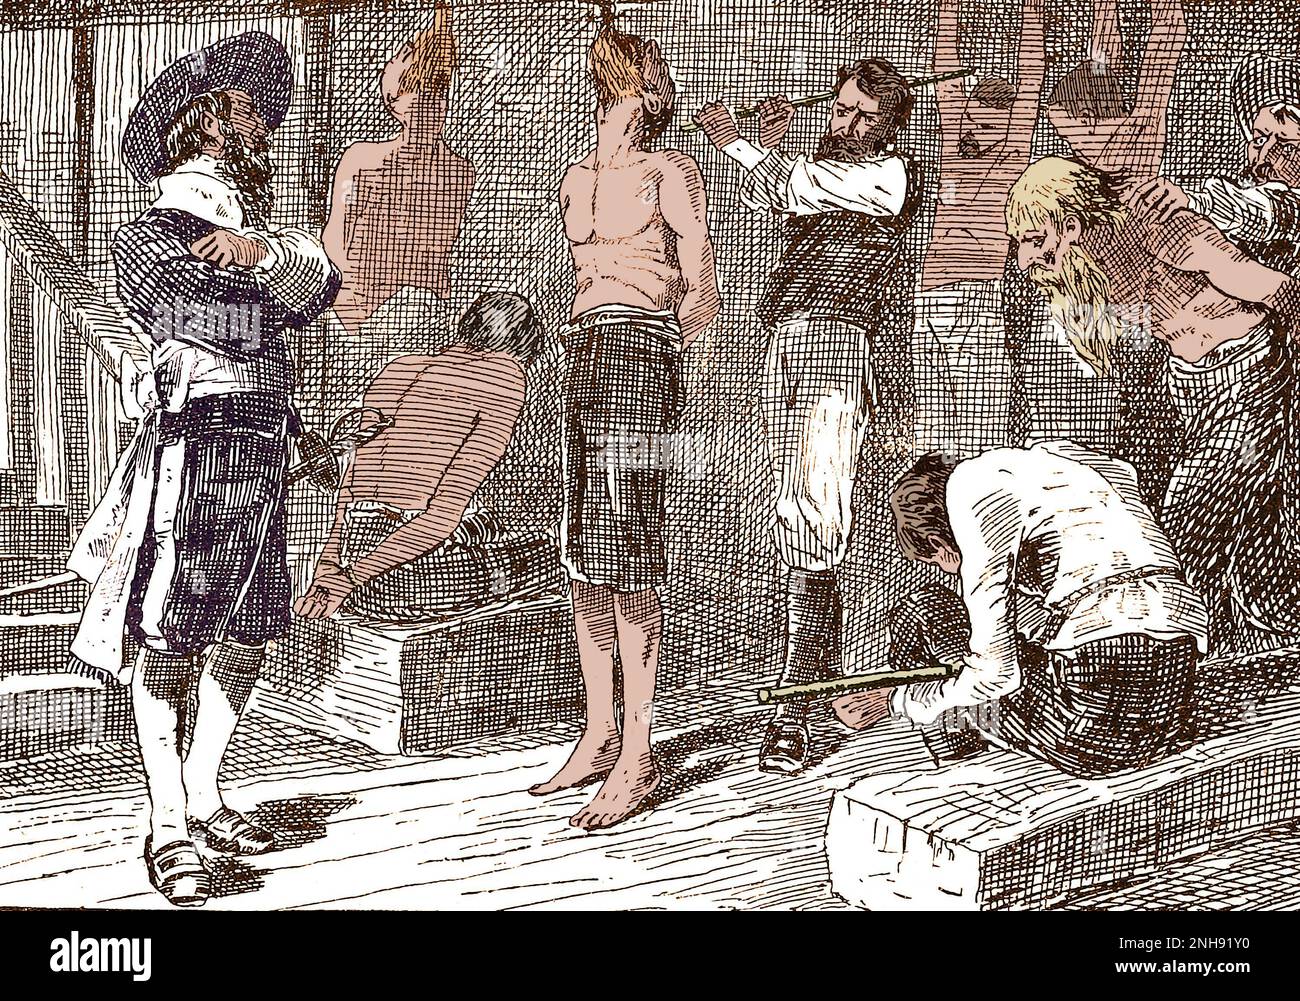 Pirat Henry Morgan foltert Gefangene. Sir Henry Morgan (1635-1688) war ein walisischer Freibeuter, Plantagenbesitzer und später Vizegouverneur von Jamaika. Illustration von John Abbott, 1874. Gefärbt. Stockfoto